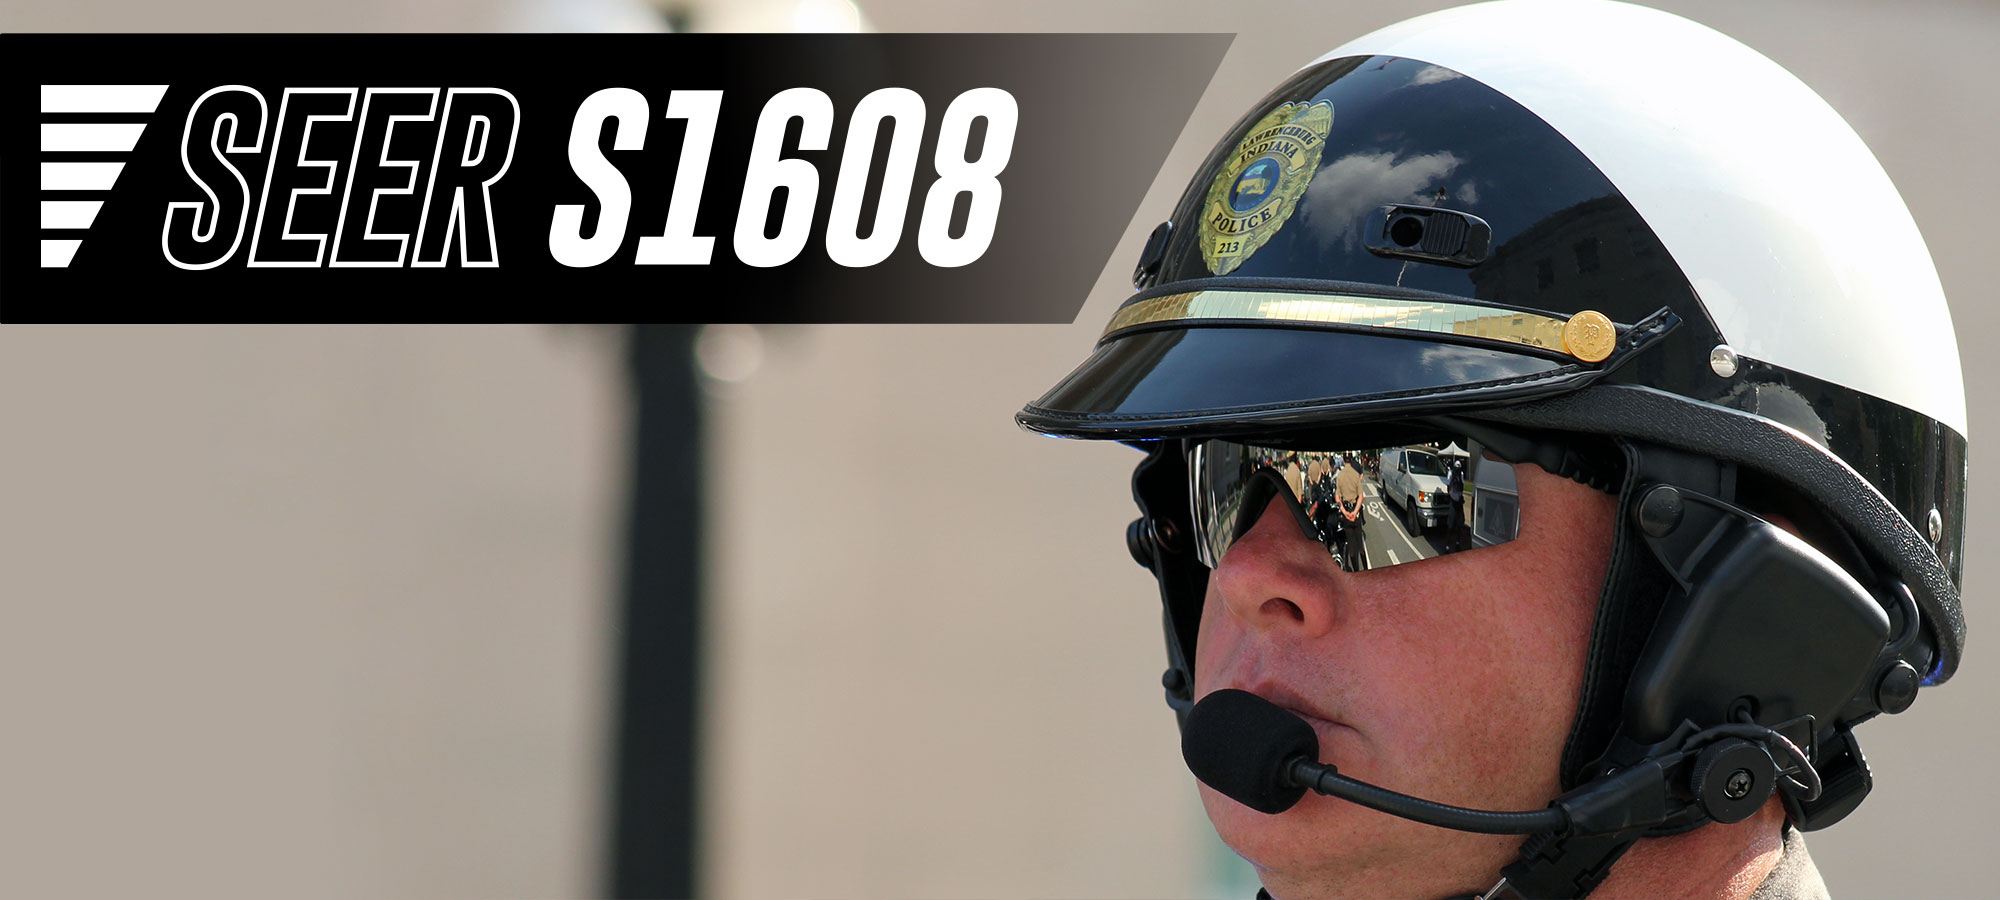 Super Seer S1608 Fiberglass Police Motorcycle Helmet